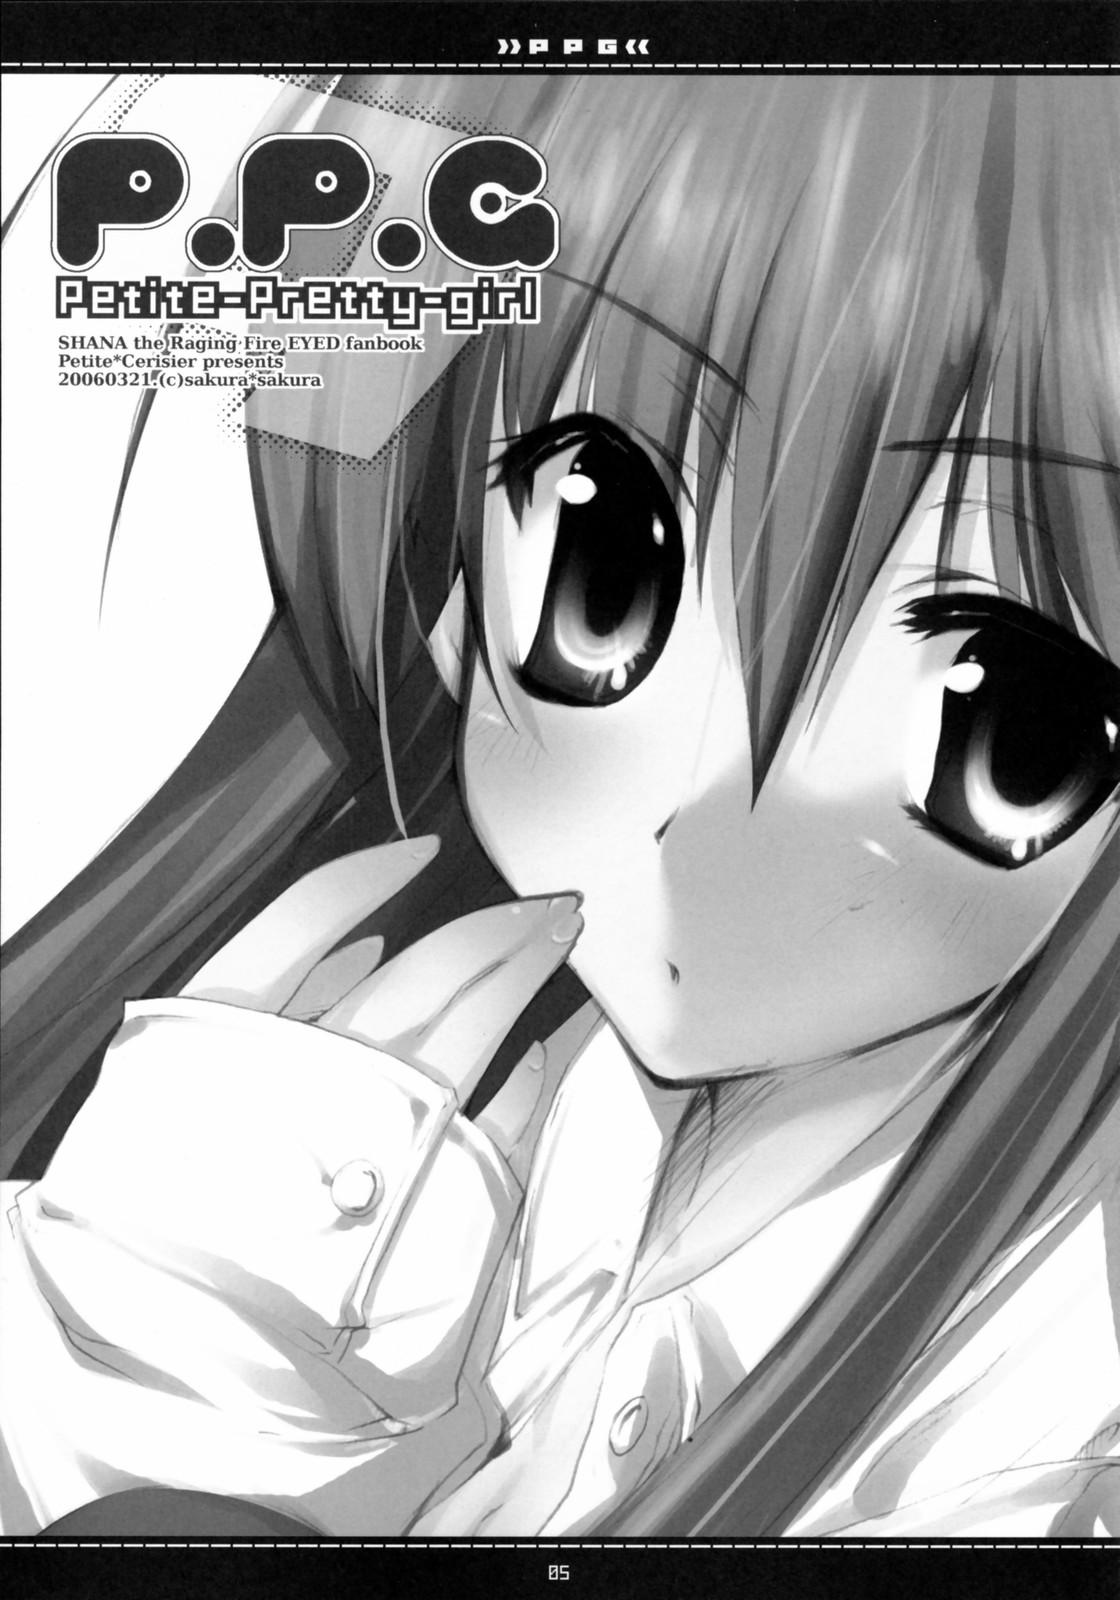 Banheiro (Suteki Kuukan 2) [Petite*Cerisier (Sakura*Sakura)] P.P.G. 9 Petite-Pretty-girl (Shakugan no Shana) - Shakugan no shana Free Amatuer Porn - Page 2